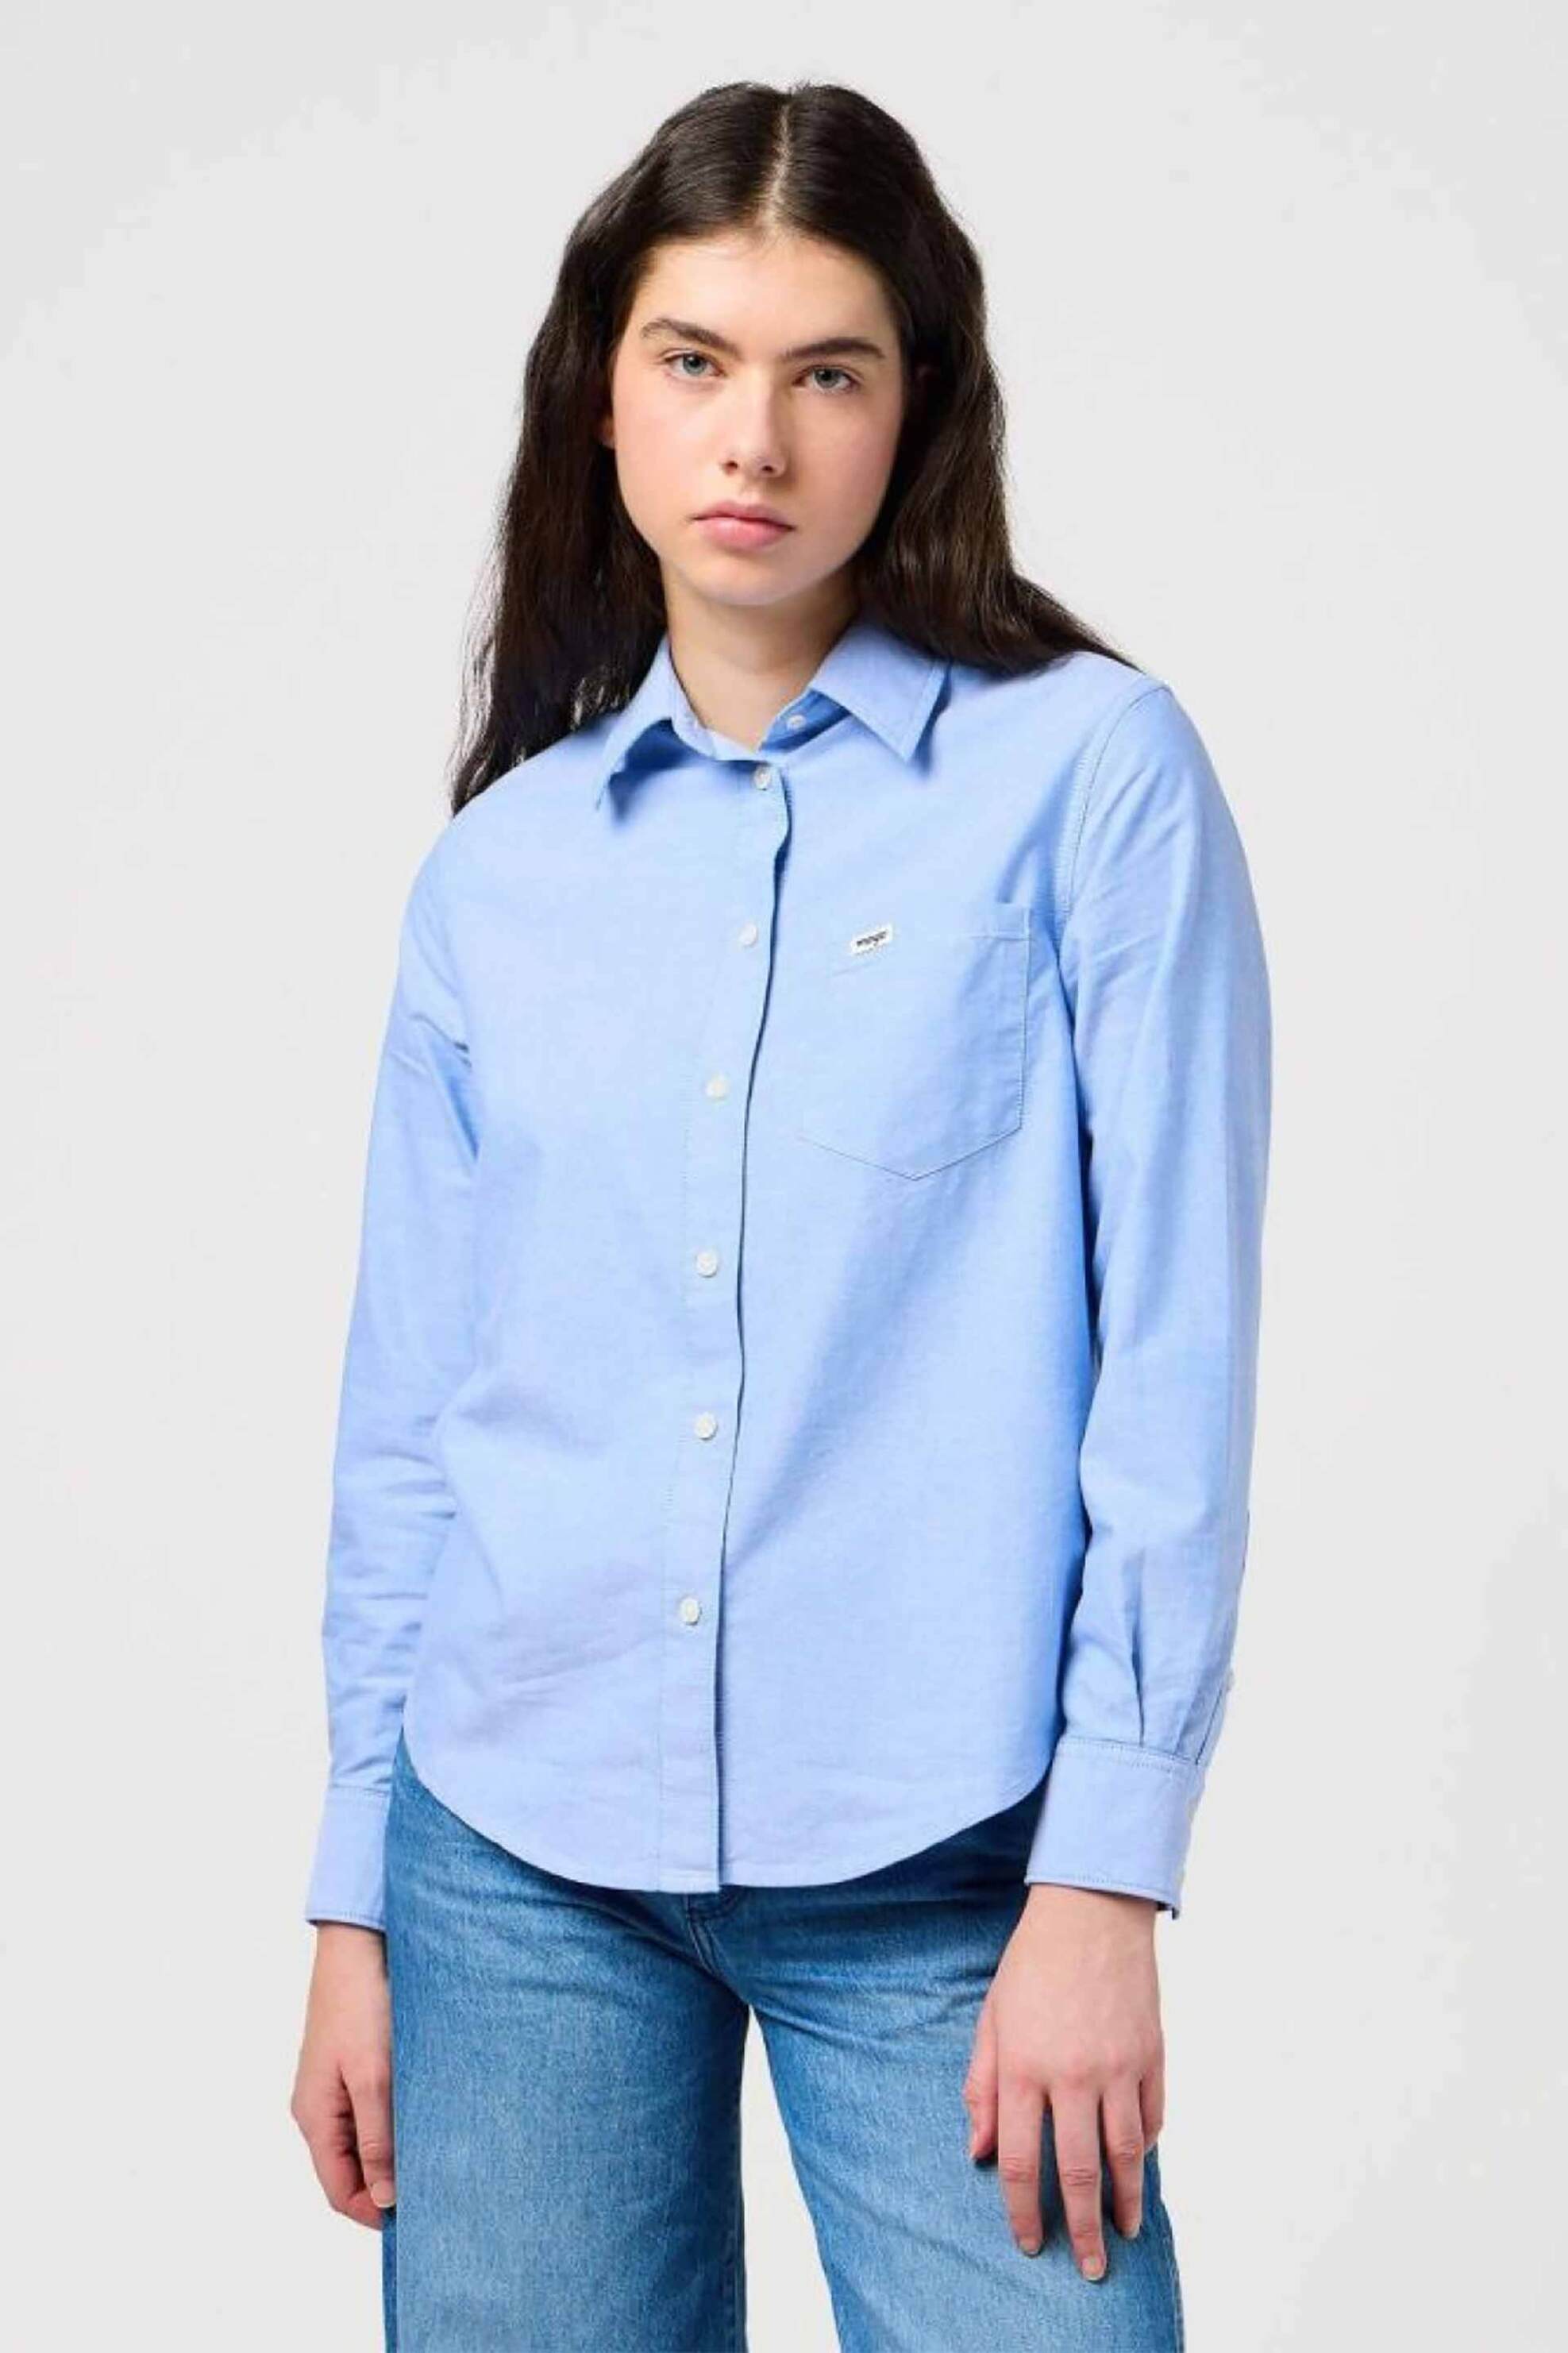 Γυναικεία Ρούχα & Αξεσουάρ > Γυναικεία Ρούχα > Γυναικεία Πουκάμισα > Γυναικεία Πουκάμισα Casual Wrangler® γυναικείο πουκάμισο με τσέπη και λογότυπο Regular Fit - 112350324 Μπλε Ανοιχτό